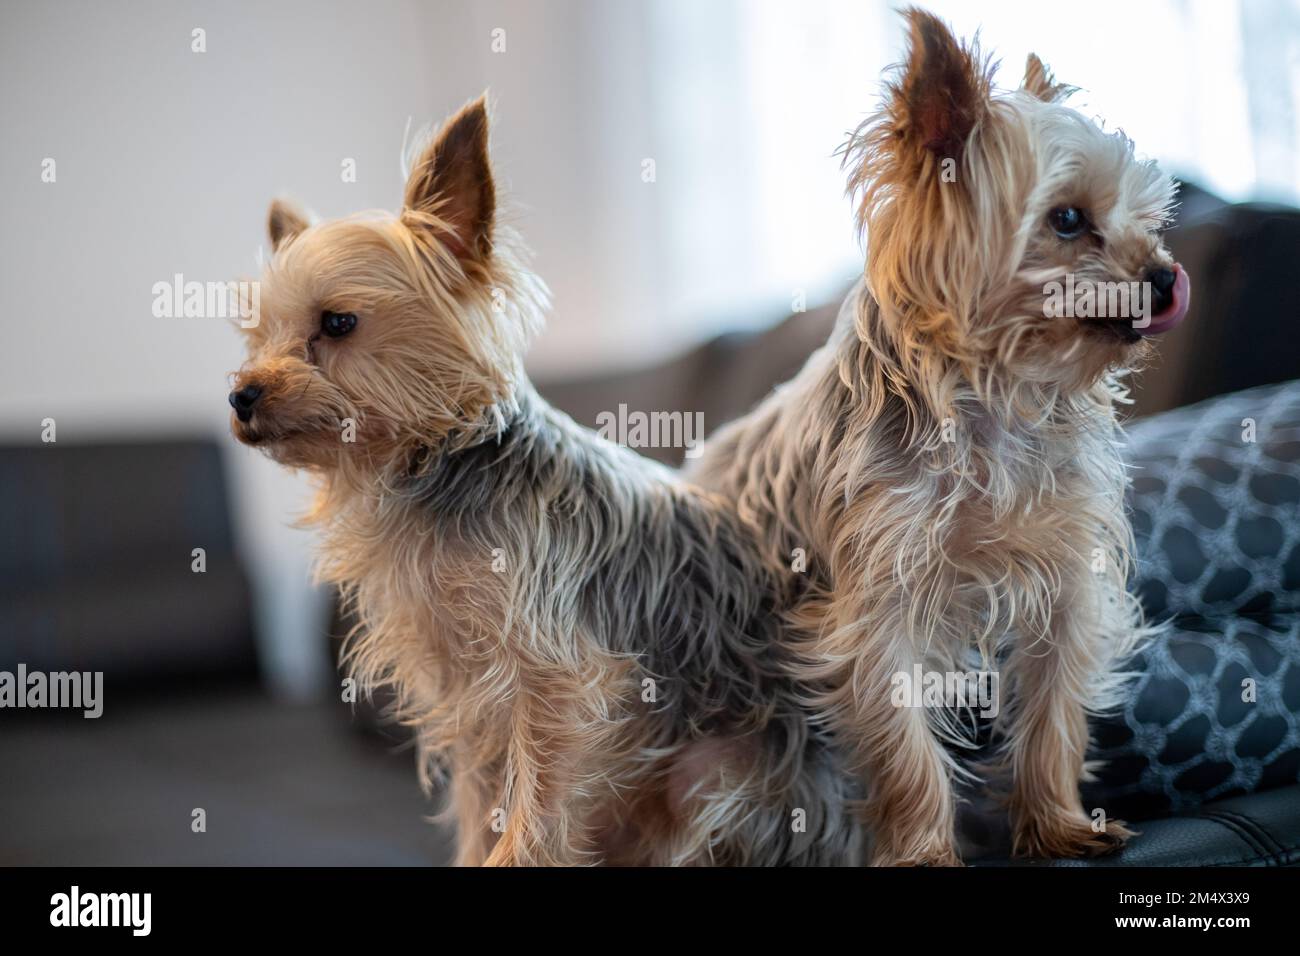 Deux petits chiens Yorkshir Terrier font partie du support de table. Photo de haute qualité Banque D'Images